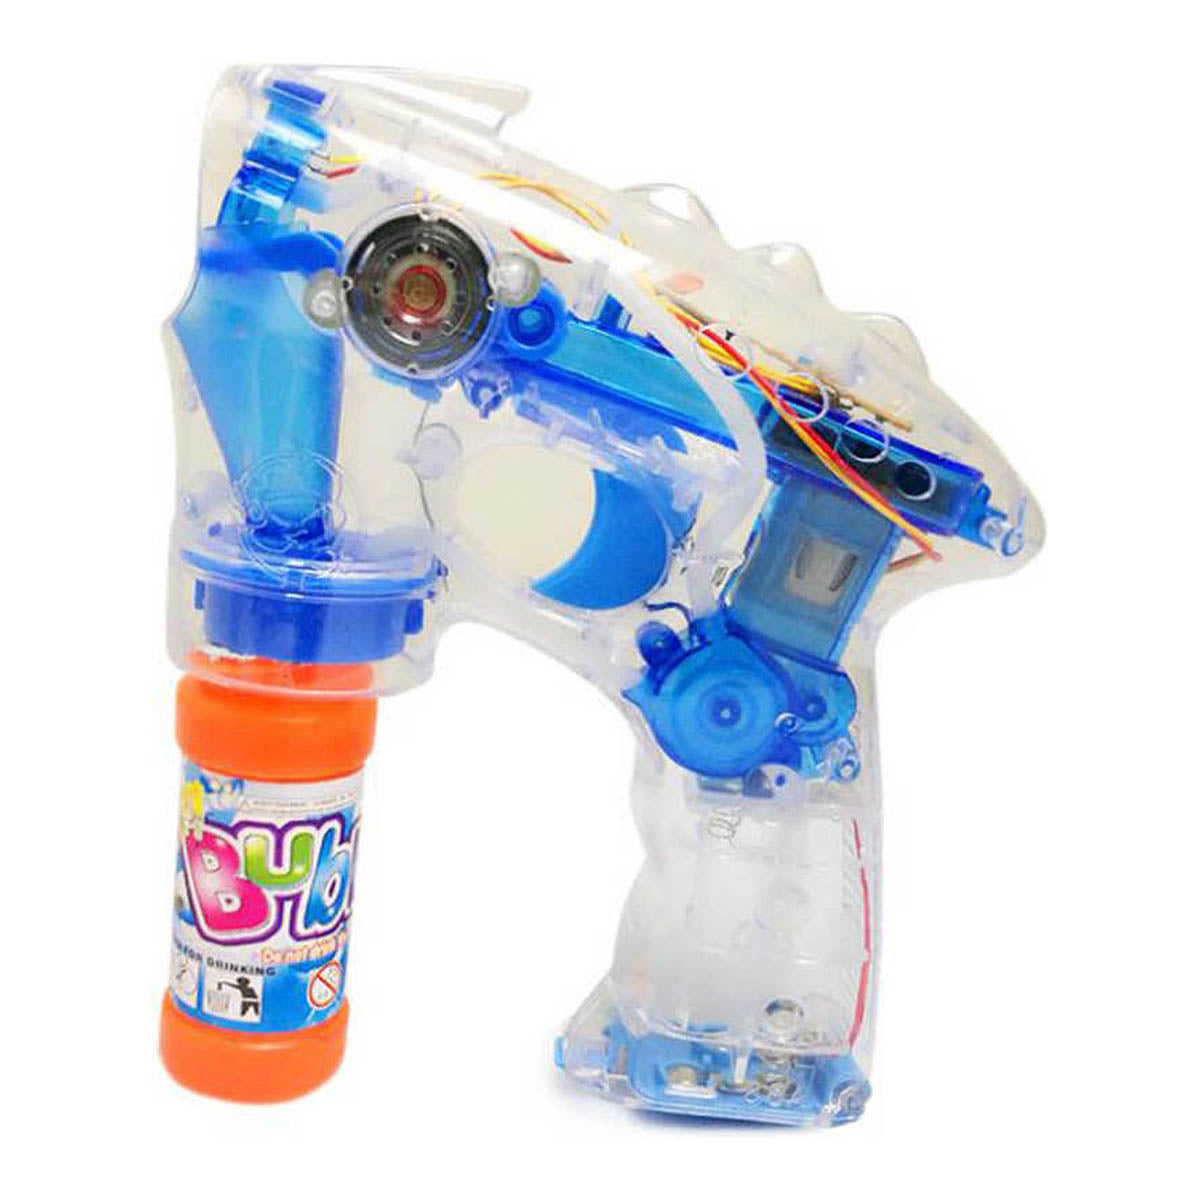 Ariko Bubble Blower avec 2 bouteilles de bubble blower | 19cm | Pistolet à bulles |Avec éclairage LED | Machine à bulles | Bulles | machine à bulles | Pistolet à bulles | Bubblegun - fabricant de bulles | super silencieux | Comprend 3 piles Philips AA